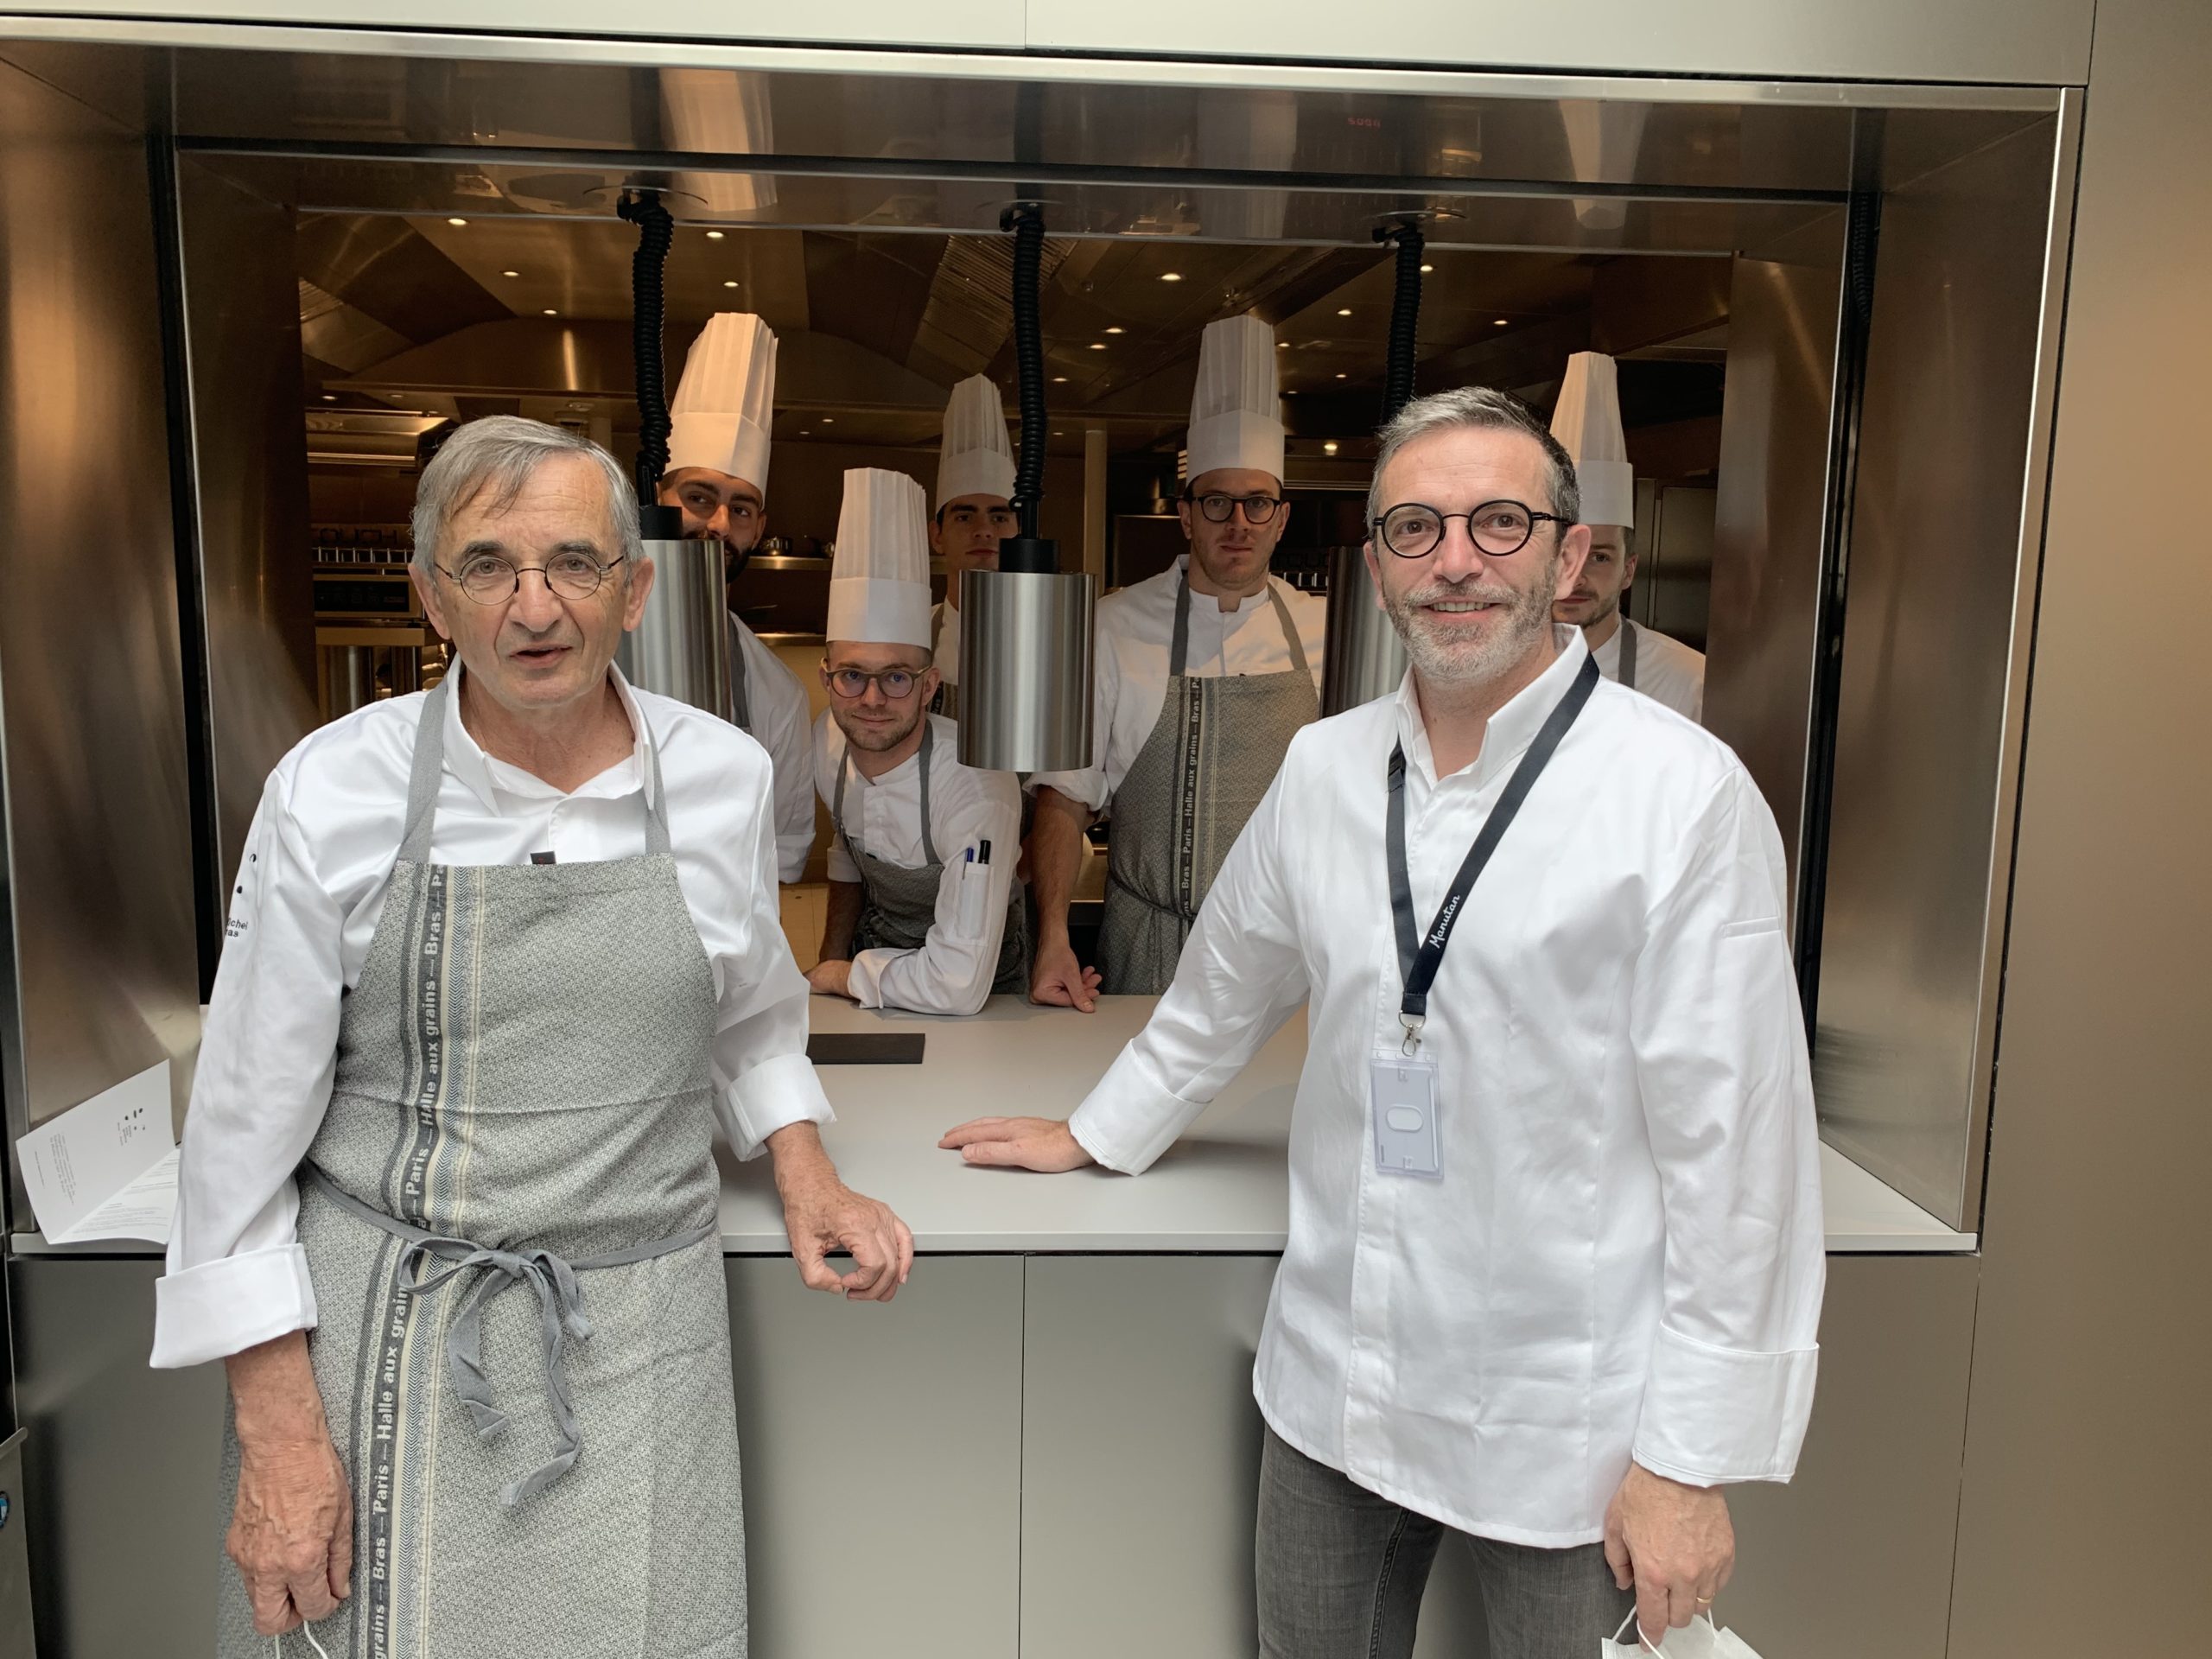 Michel et Sébastien Bras et leur équipe, dans leur nouveau restaurant La Halle aux Grains, à Paris. (LE CHEF / Francis Luzin)